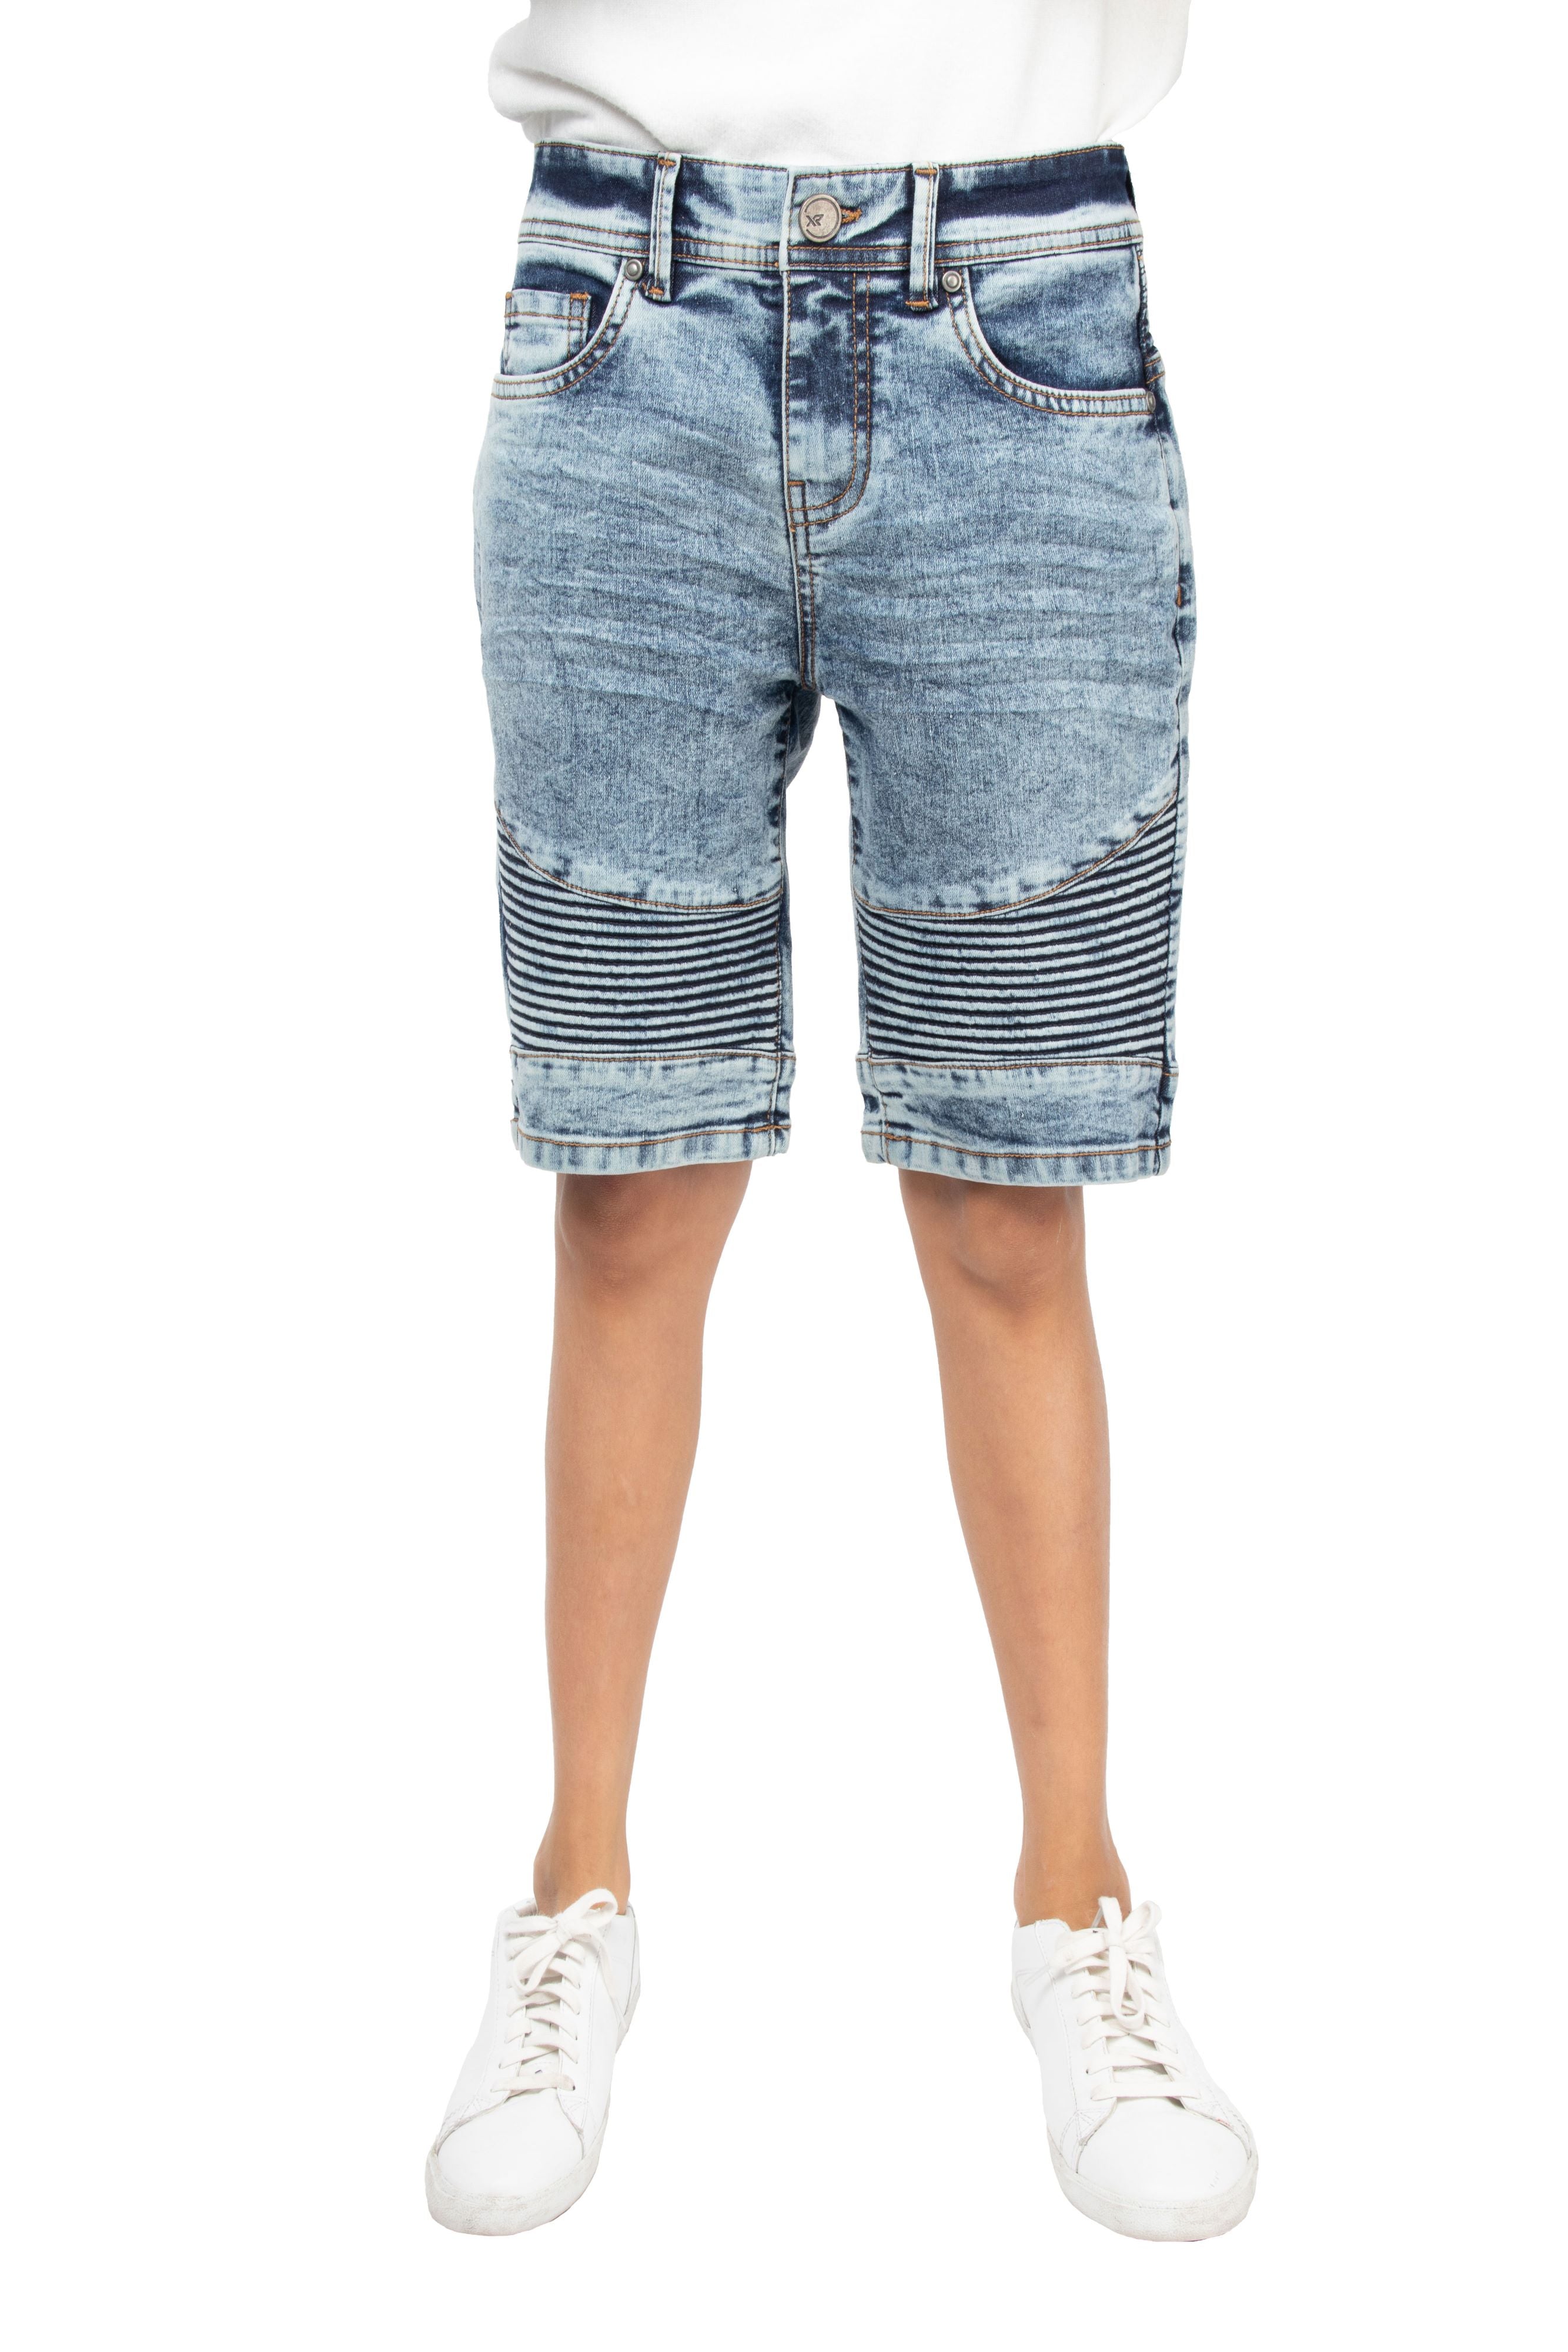 Wrangler Men's Slim Fit Denim Shorts - Macy's